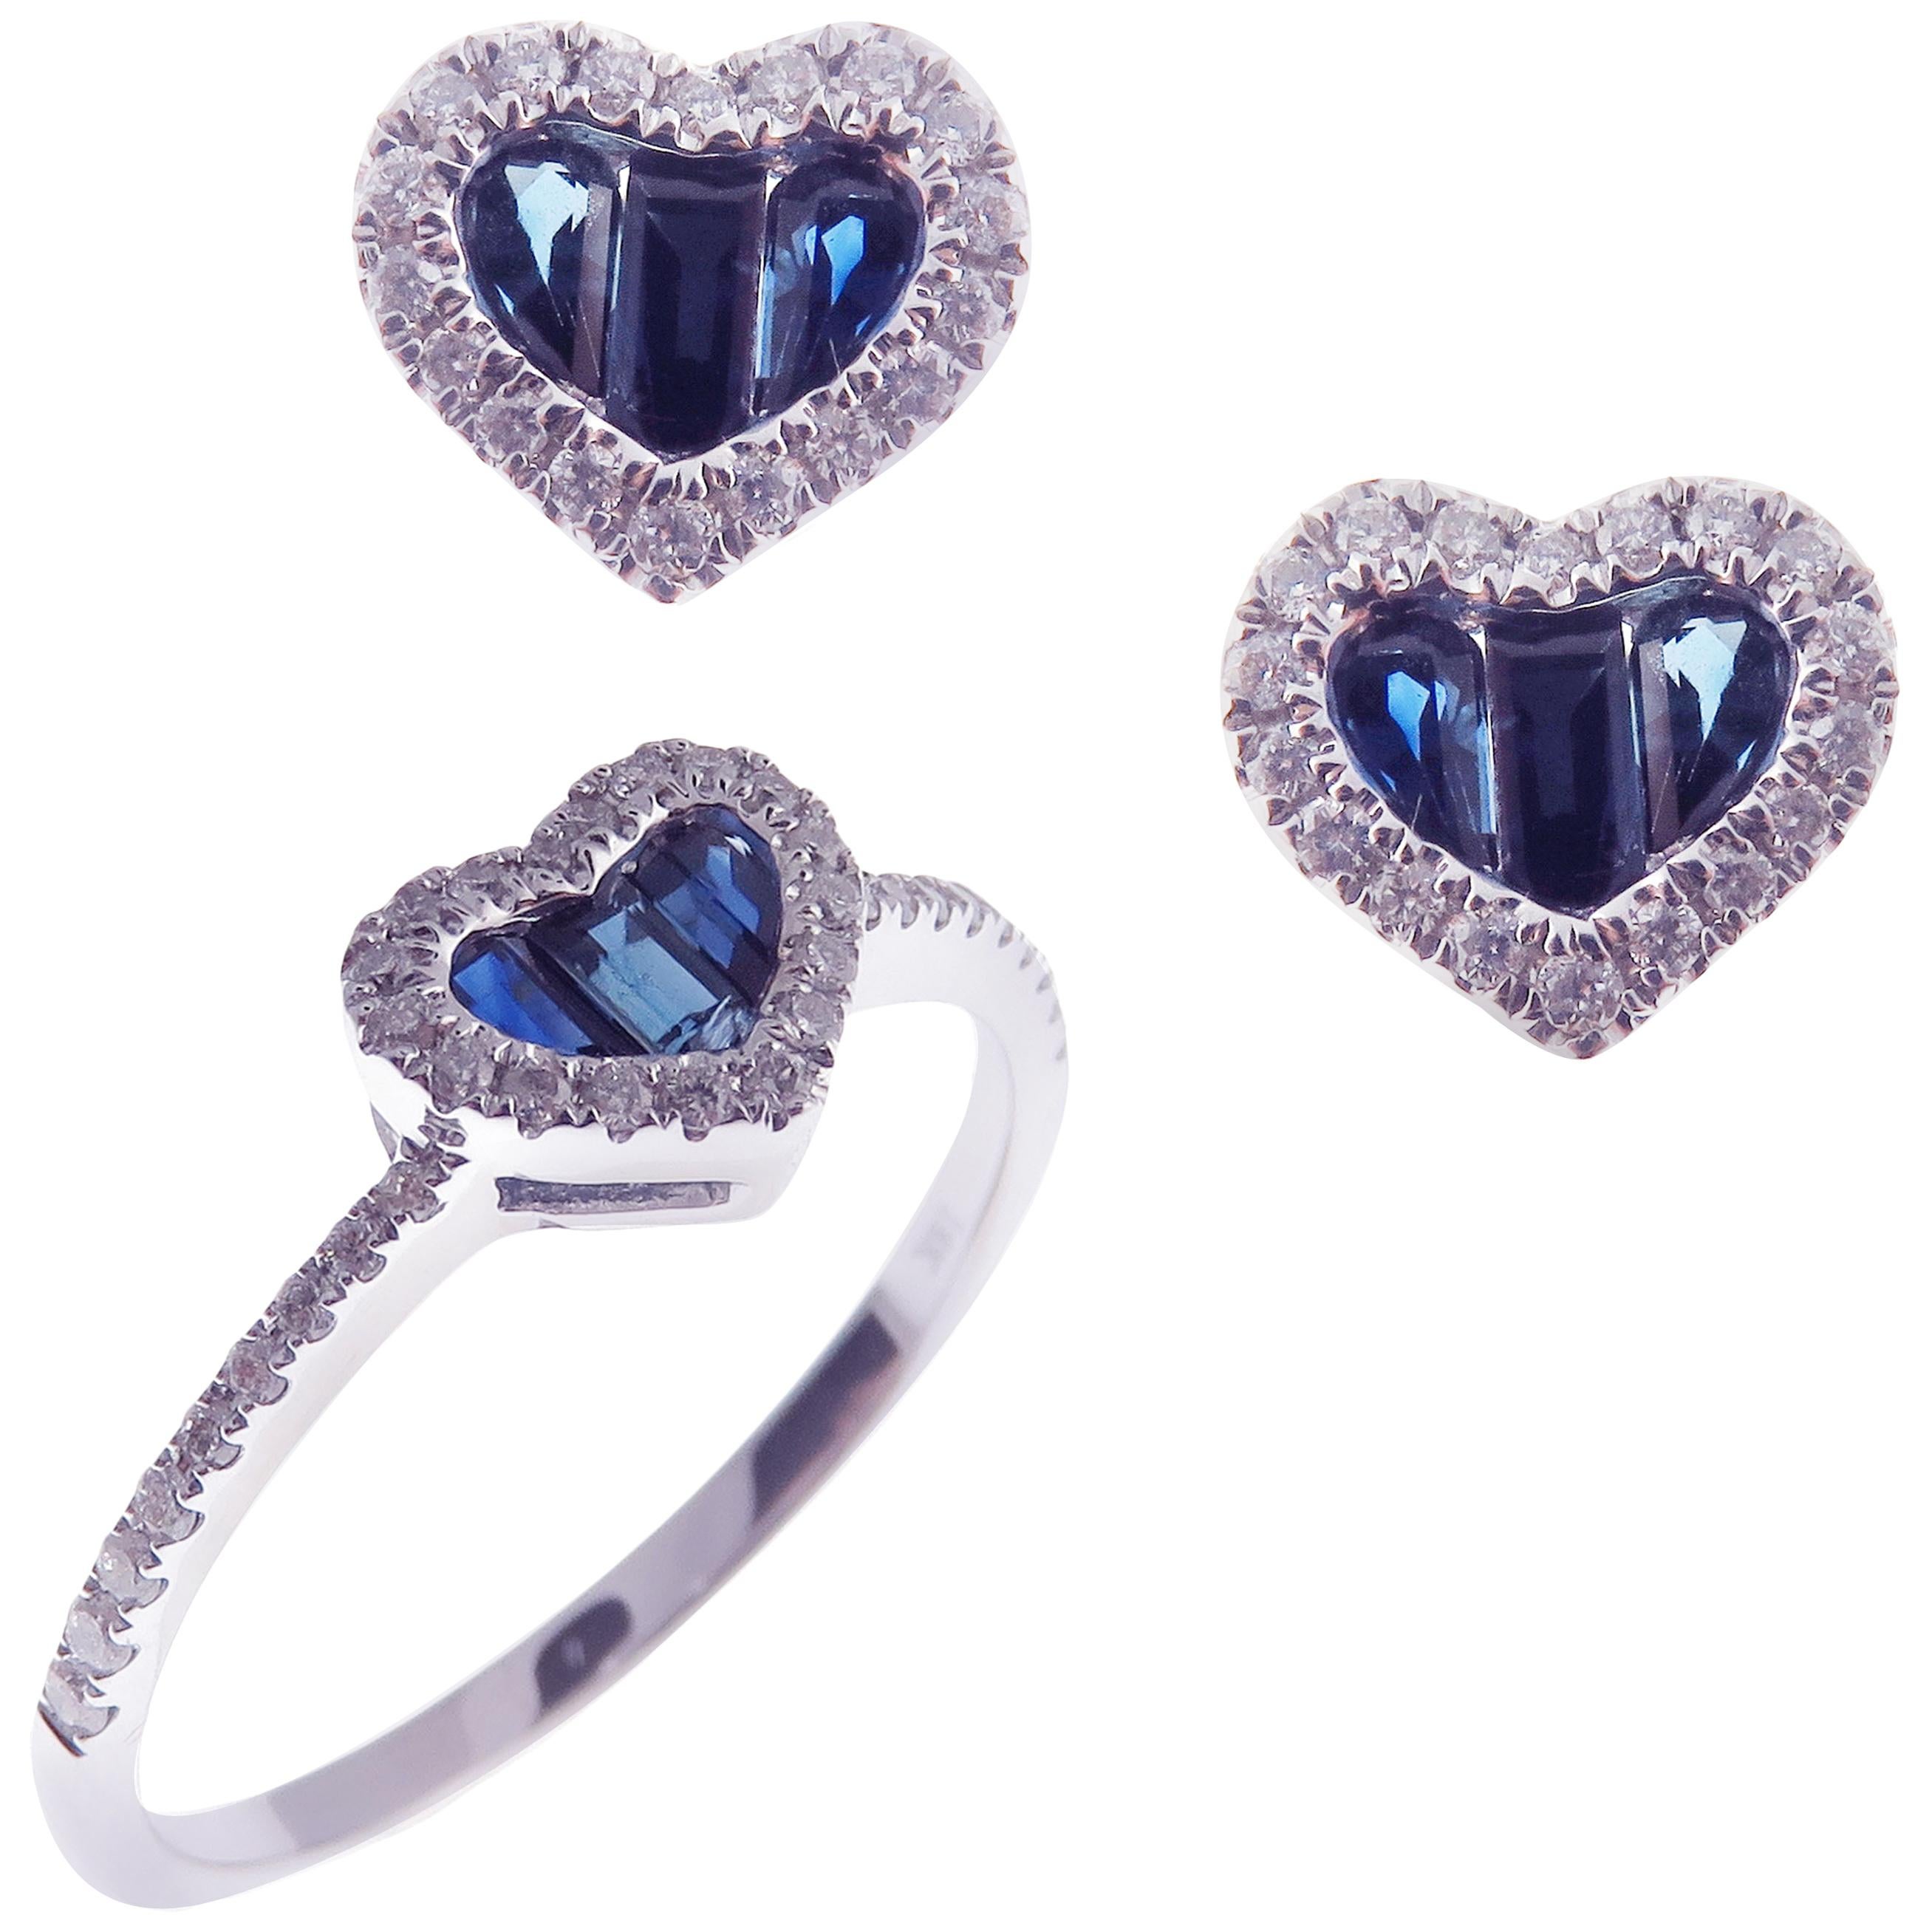 18 Karat White Gold Sapphire Small Heart Baguette Stud Earring Ring Set